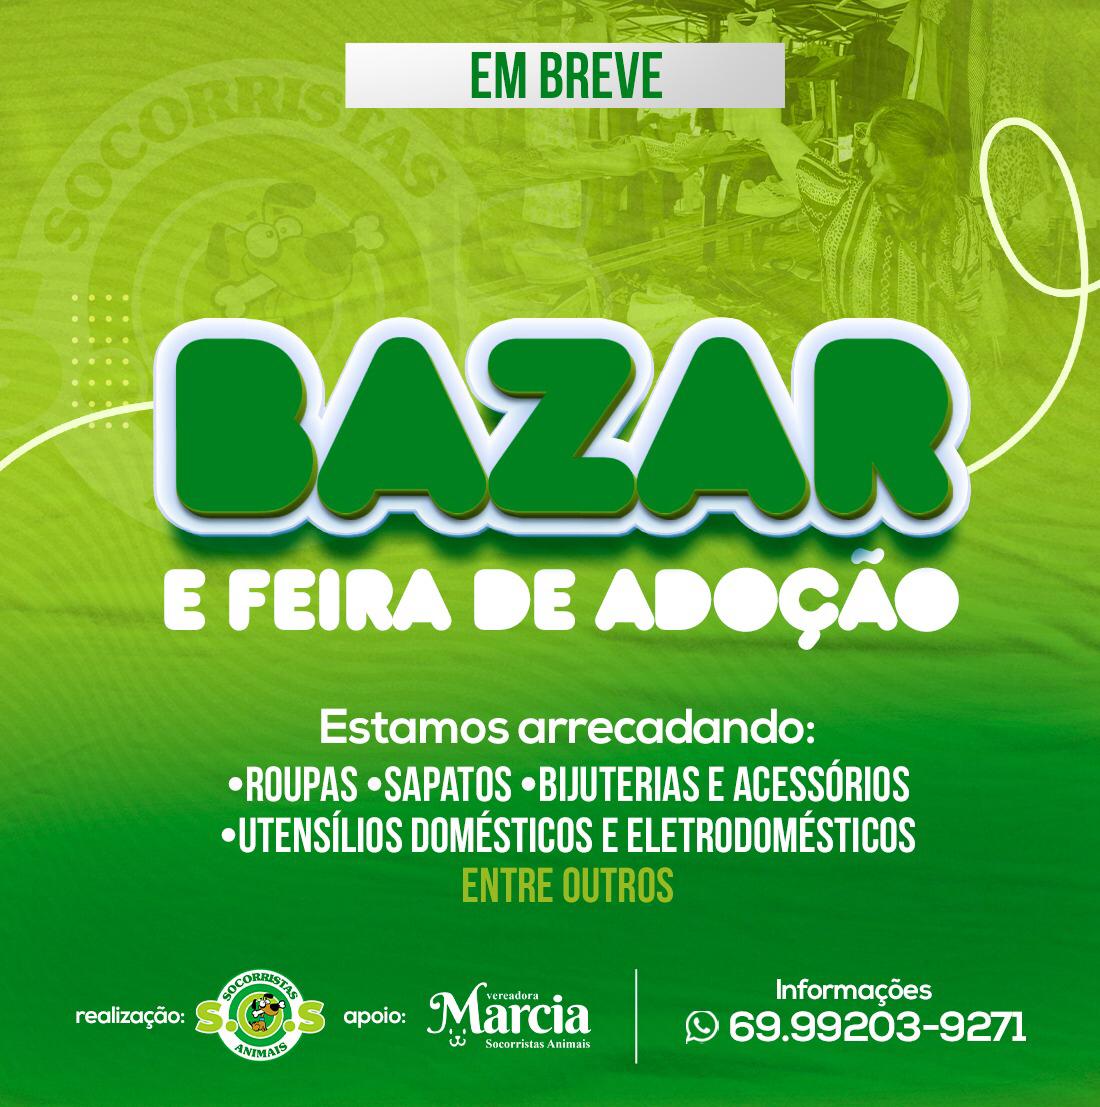 Abrigo Socorristas Animais está arrecadando doações para bazar beneficente - News Rondônia